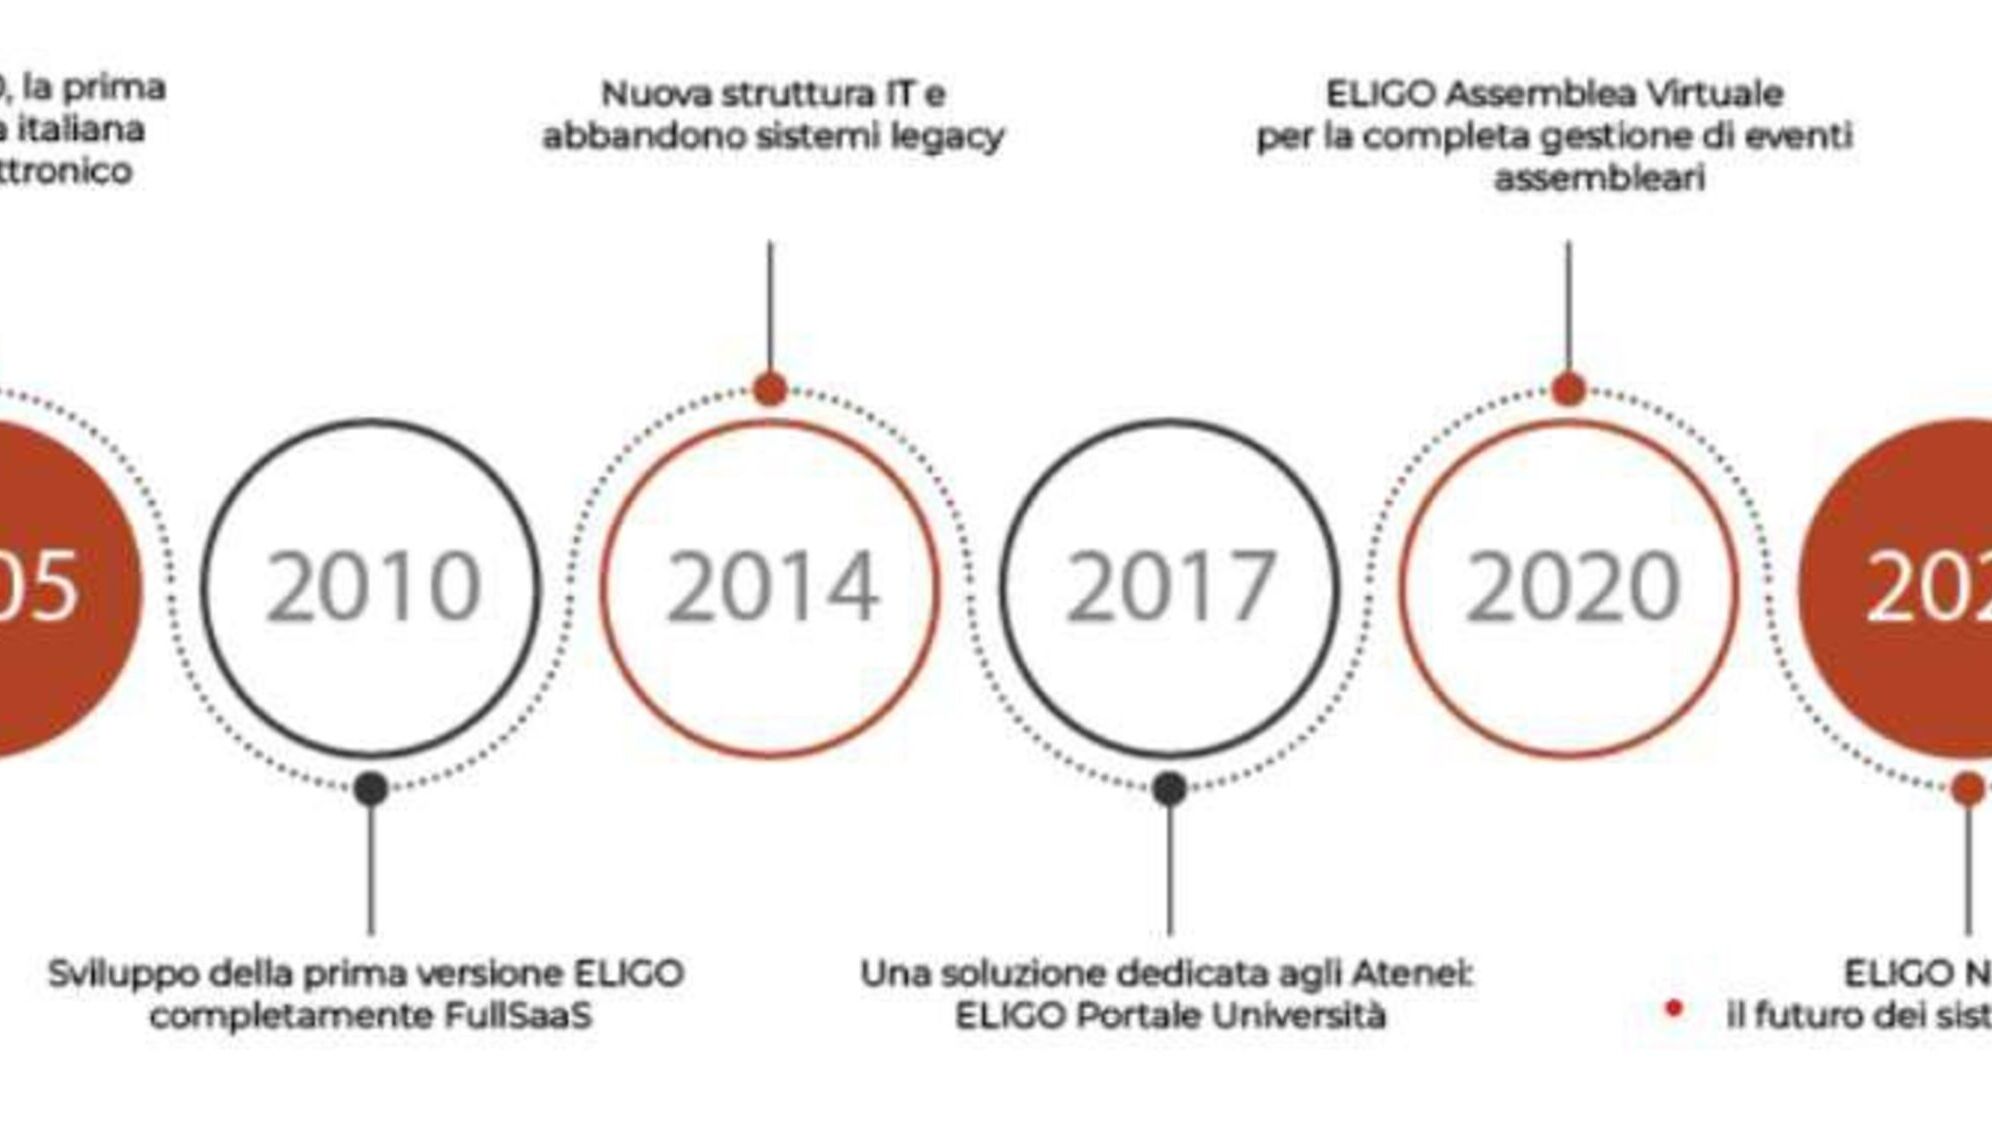 Eligo Next: цікавая інфаграфіка ўзятая з афіцыйнай прэзентацыйнай брашуры новай платформы электроннага і інтэрнэт-галасавання Eligo Next